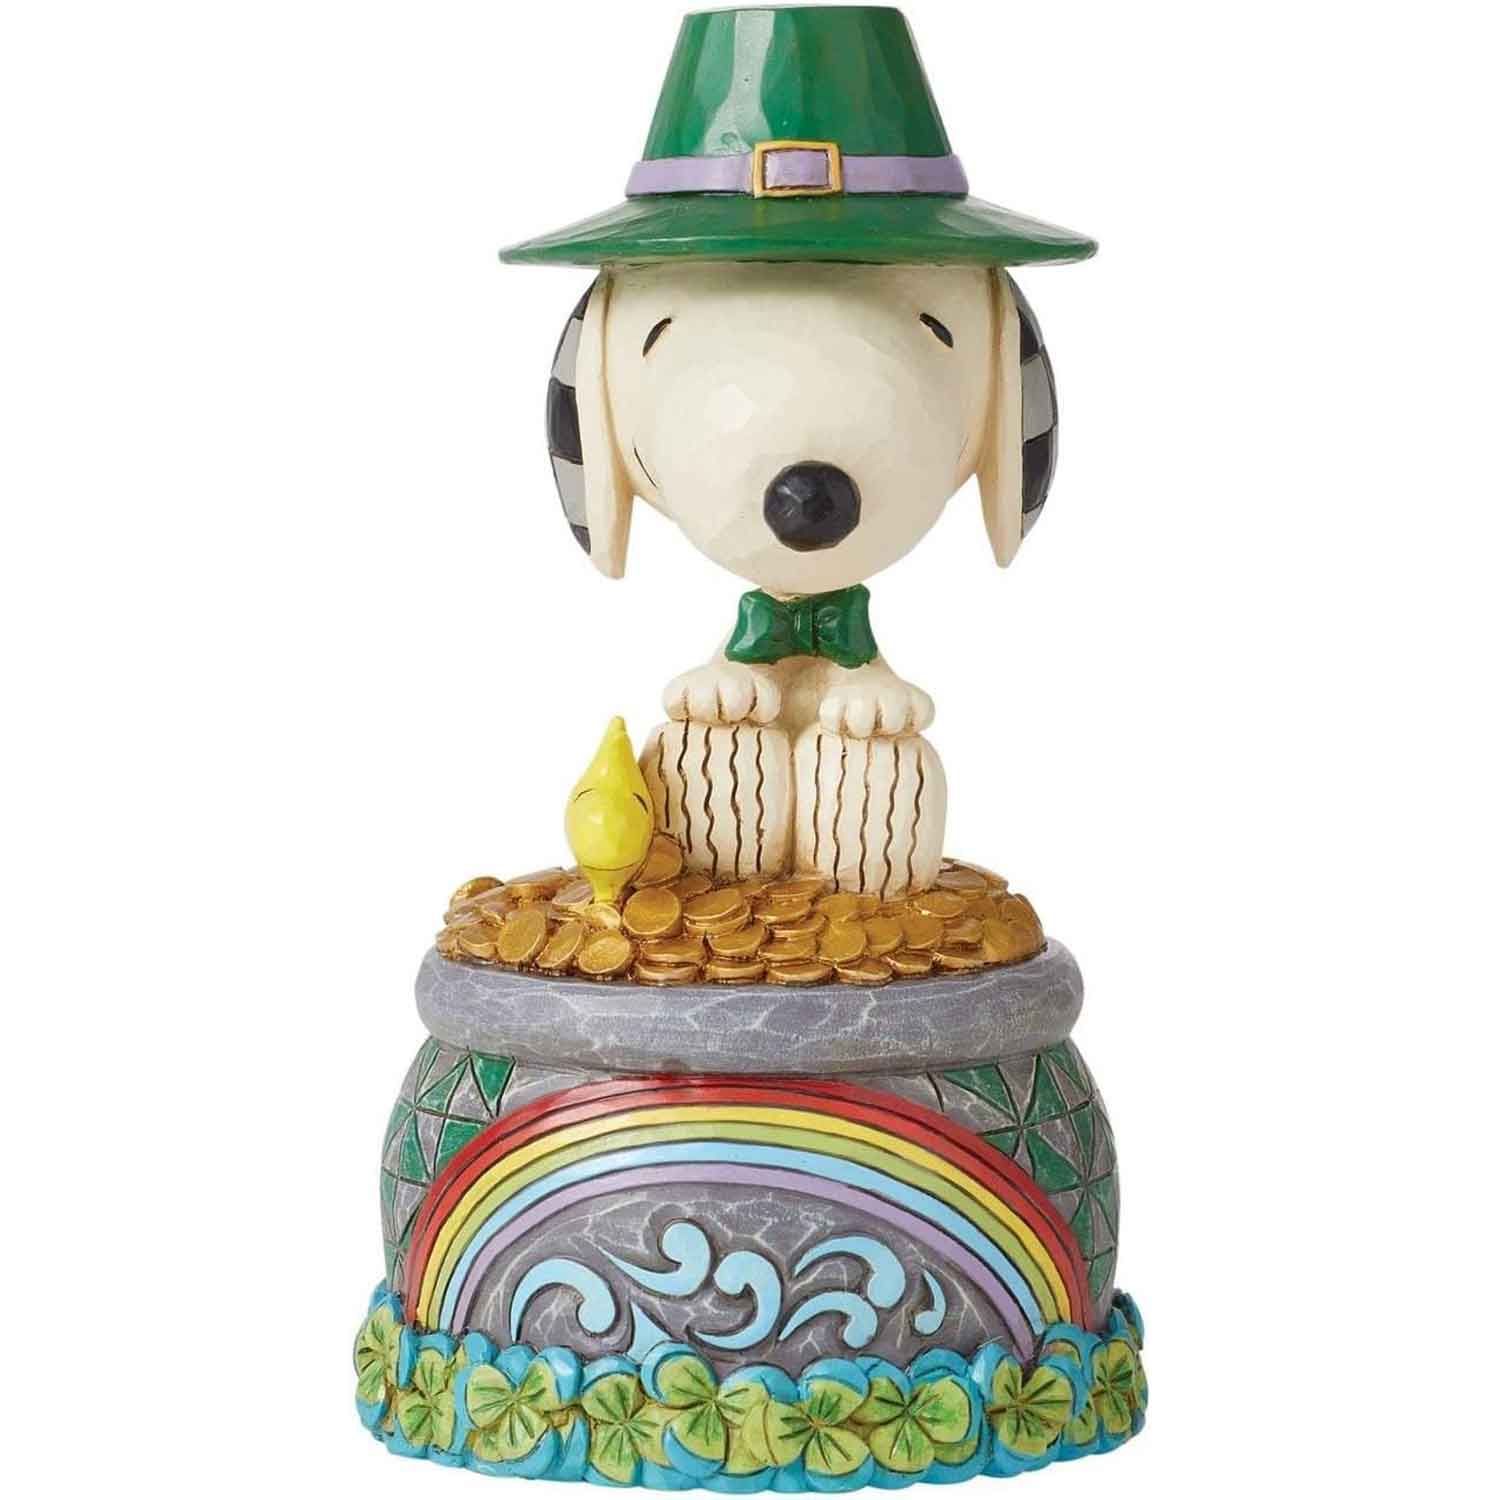 Peanuts-Snoopy-&-Woodstock-"Topf-voller-Gold"-Jim-Shore-Figur-berlindeluxe-hund-hut-geld-kuecken